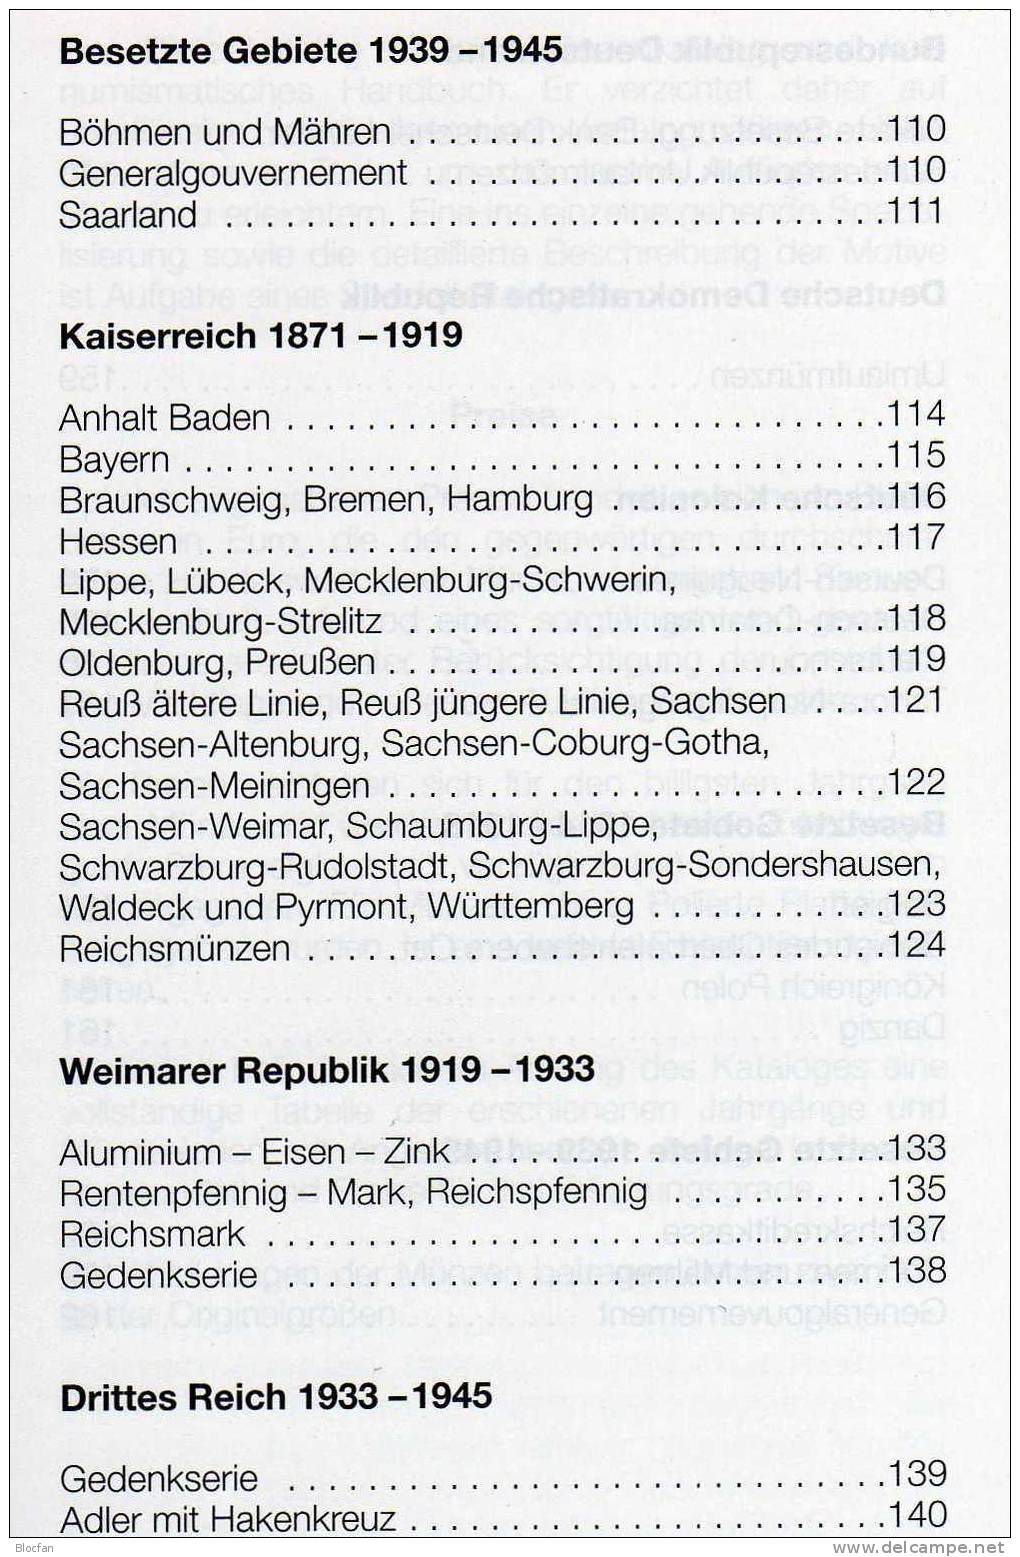 Münzen-Katalog Deutschland 2011 Neu 6€ Preiswerter DIETZEL Für Münzen Ab 1871 Catalogue Coins From Old And New Germany - Chroniques & Annuaires